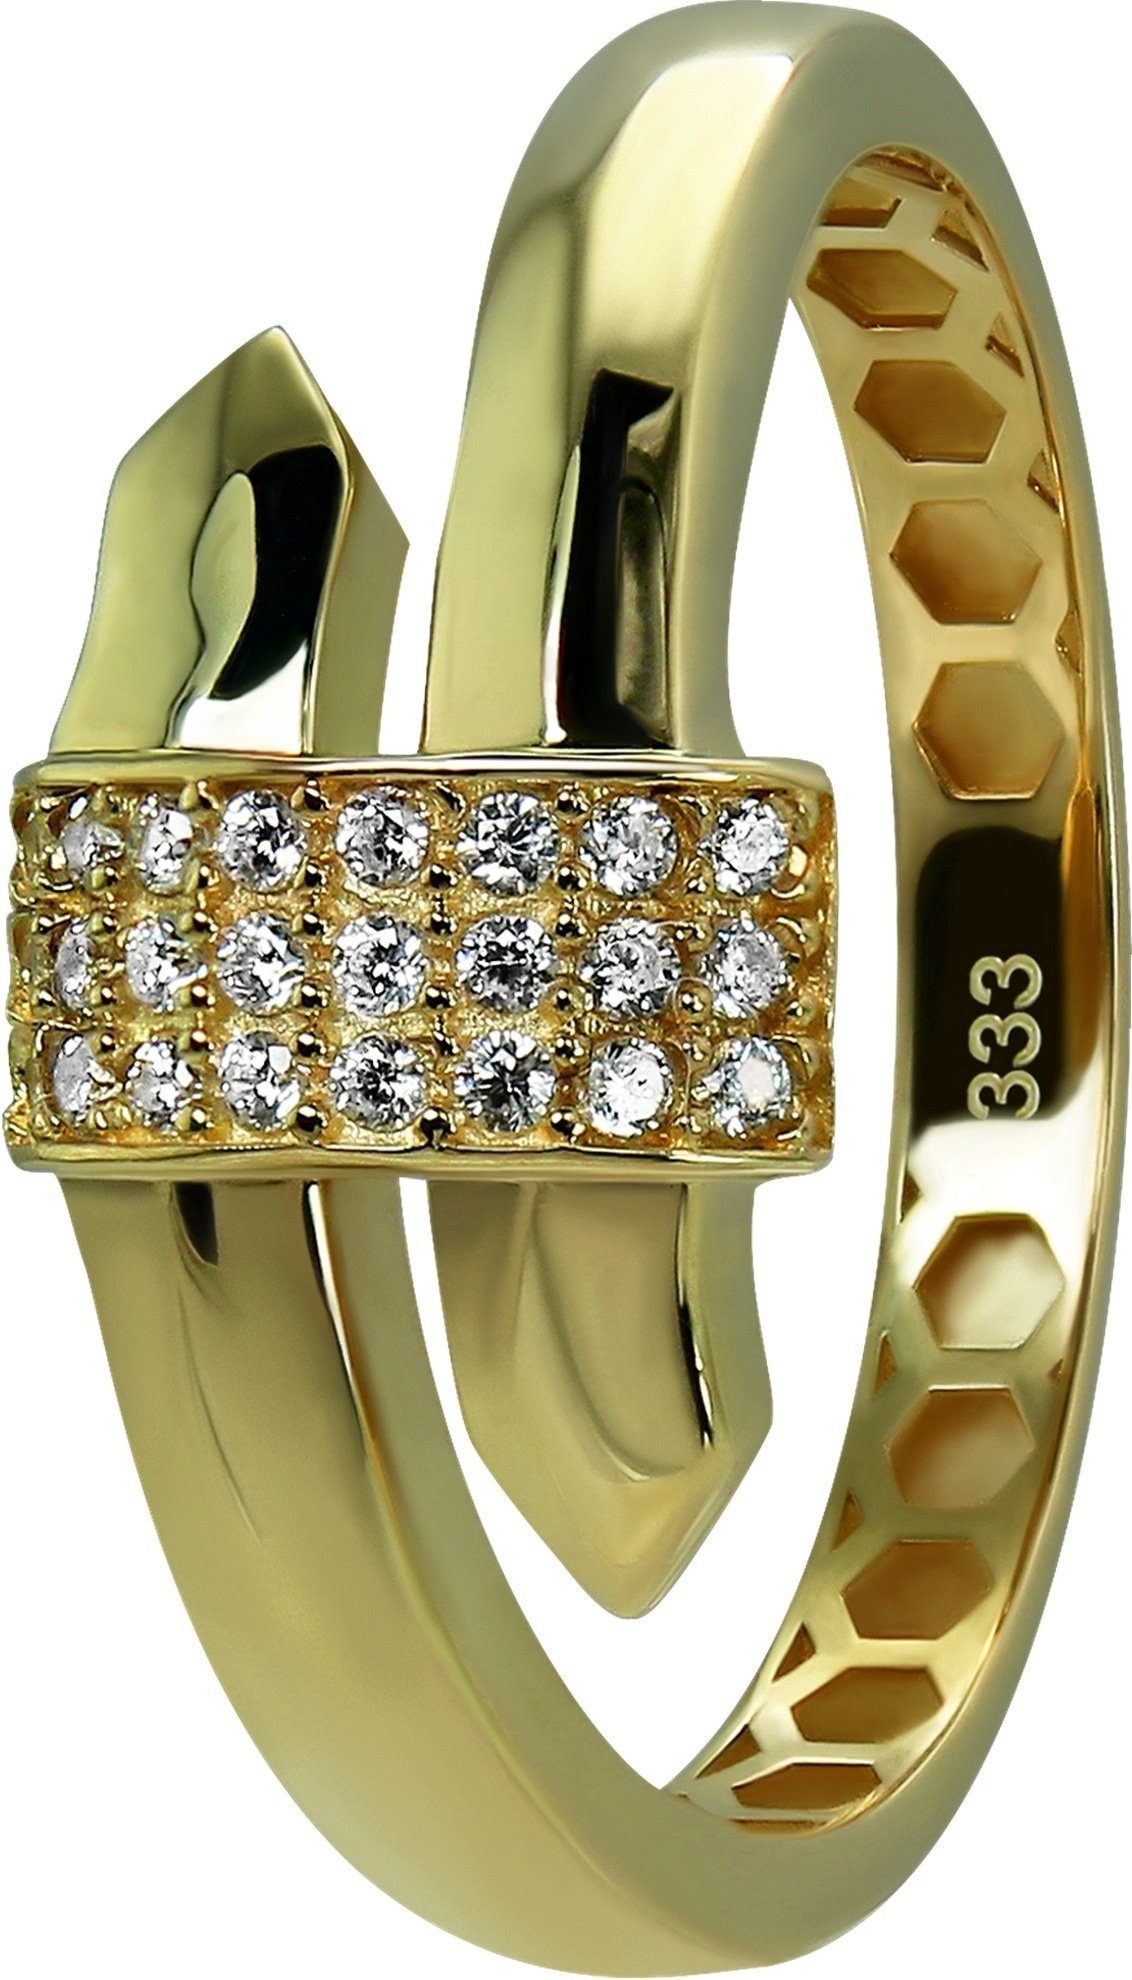 GoldDream Goldring GoldDream Ring Glamour Damen 333 Glamour Ring 8 Karat, Gelbgold Farbe: (Fingerring), - Gr.60 weiß Gold gold